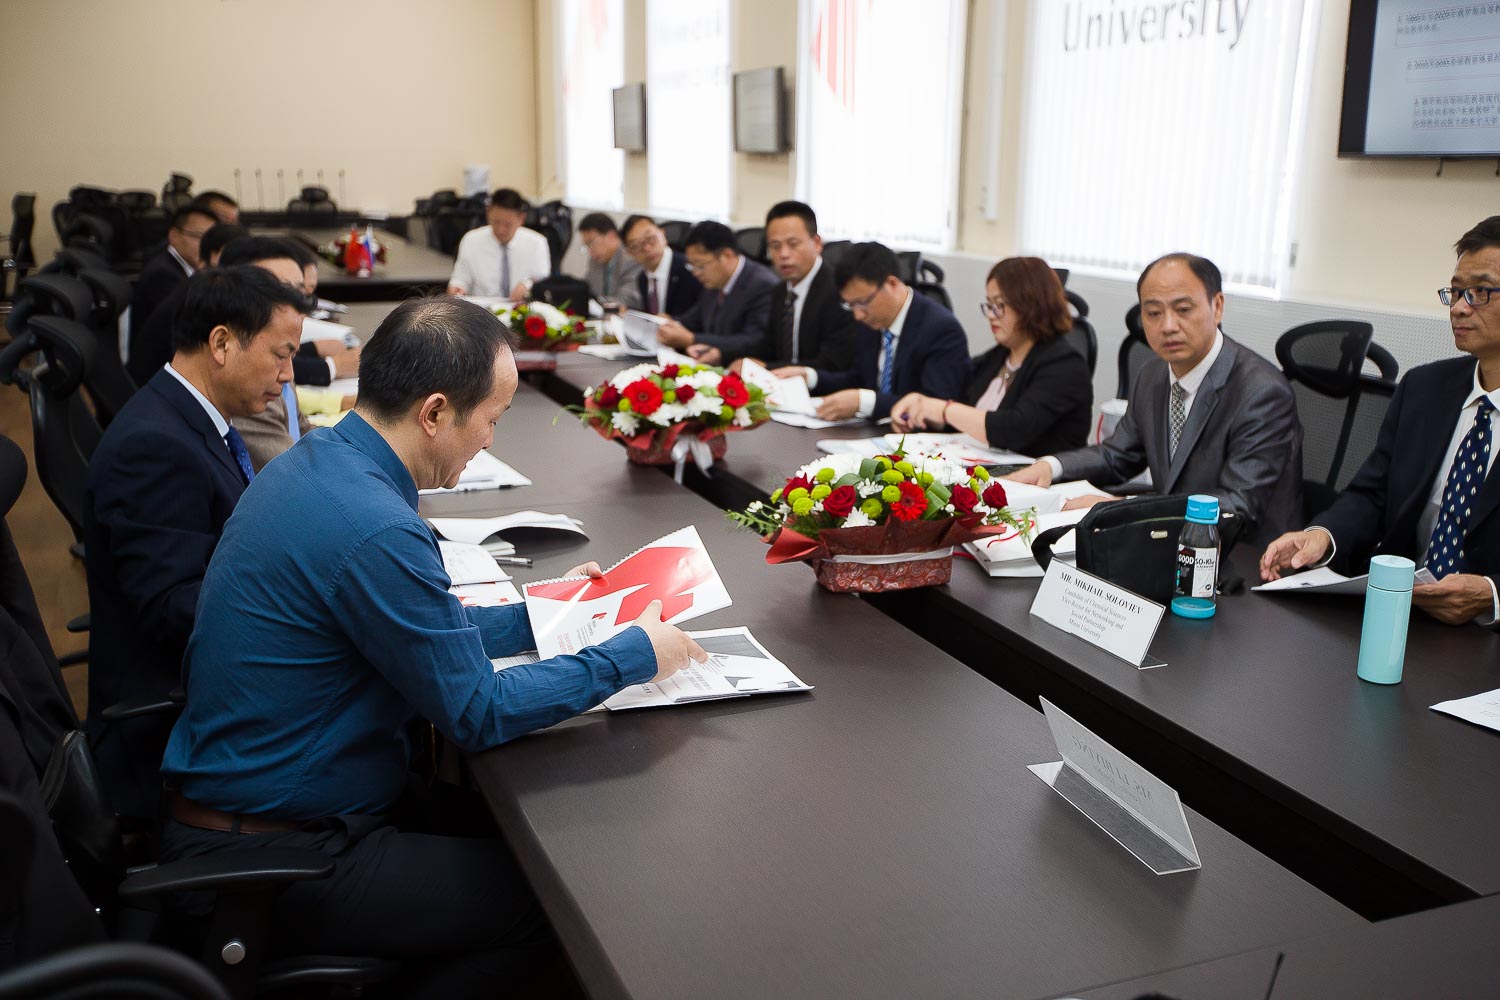 Мининский университет встречает китайских партнёров